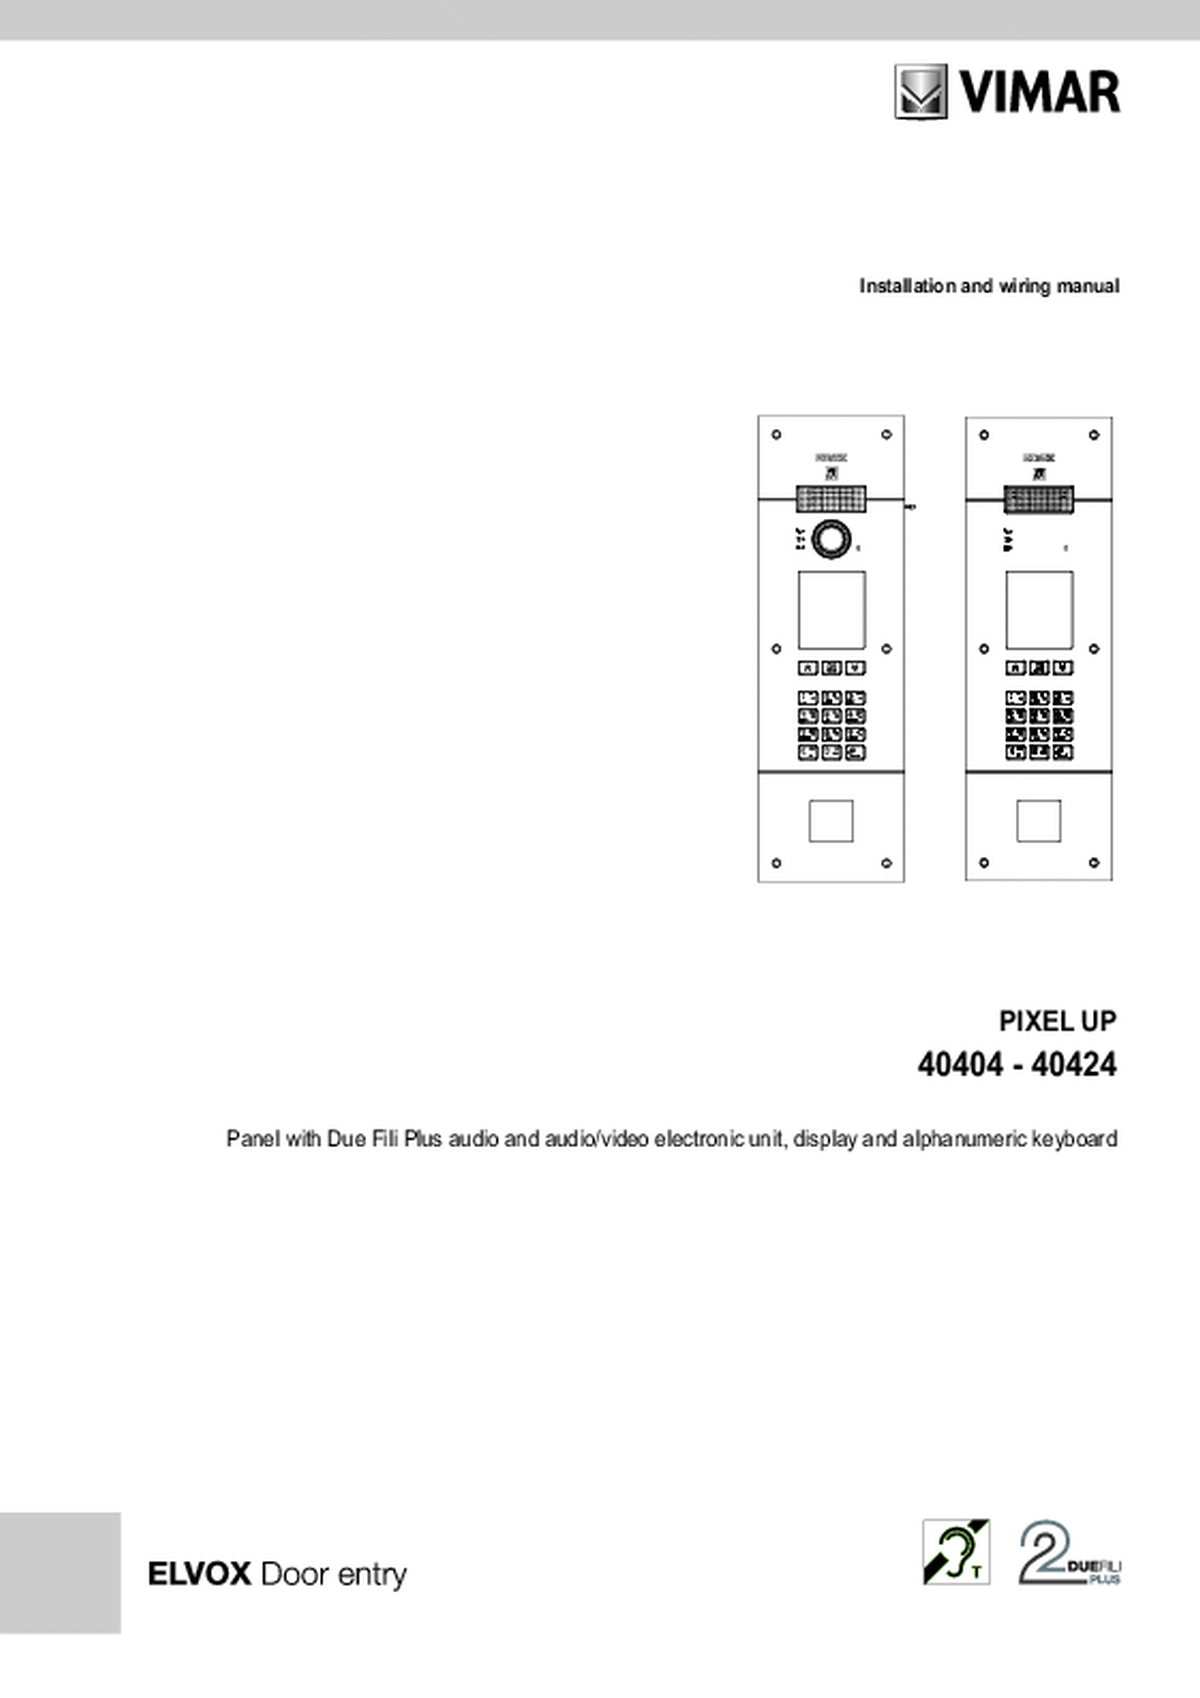 Elvox fabrieksschema Pixel UP audio deurstation tbv cardreader installatie